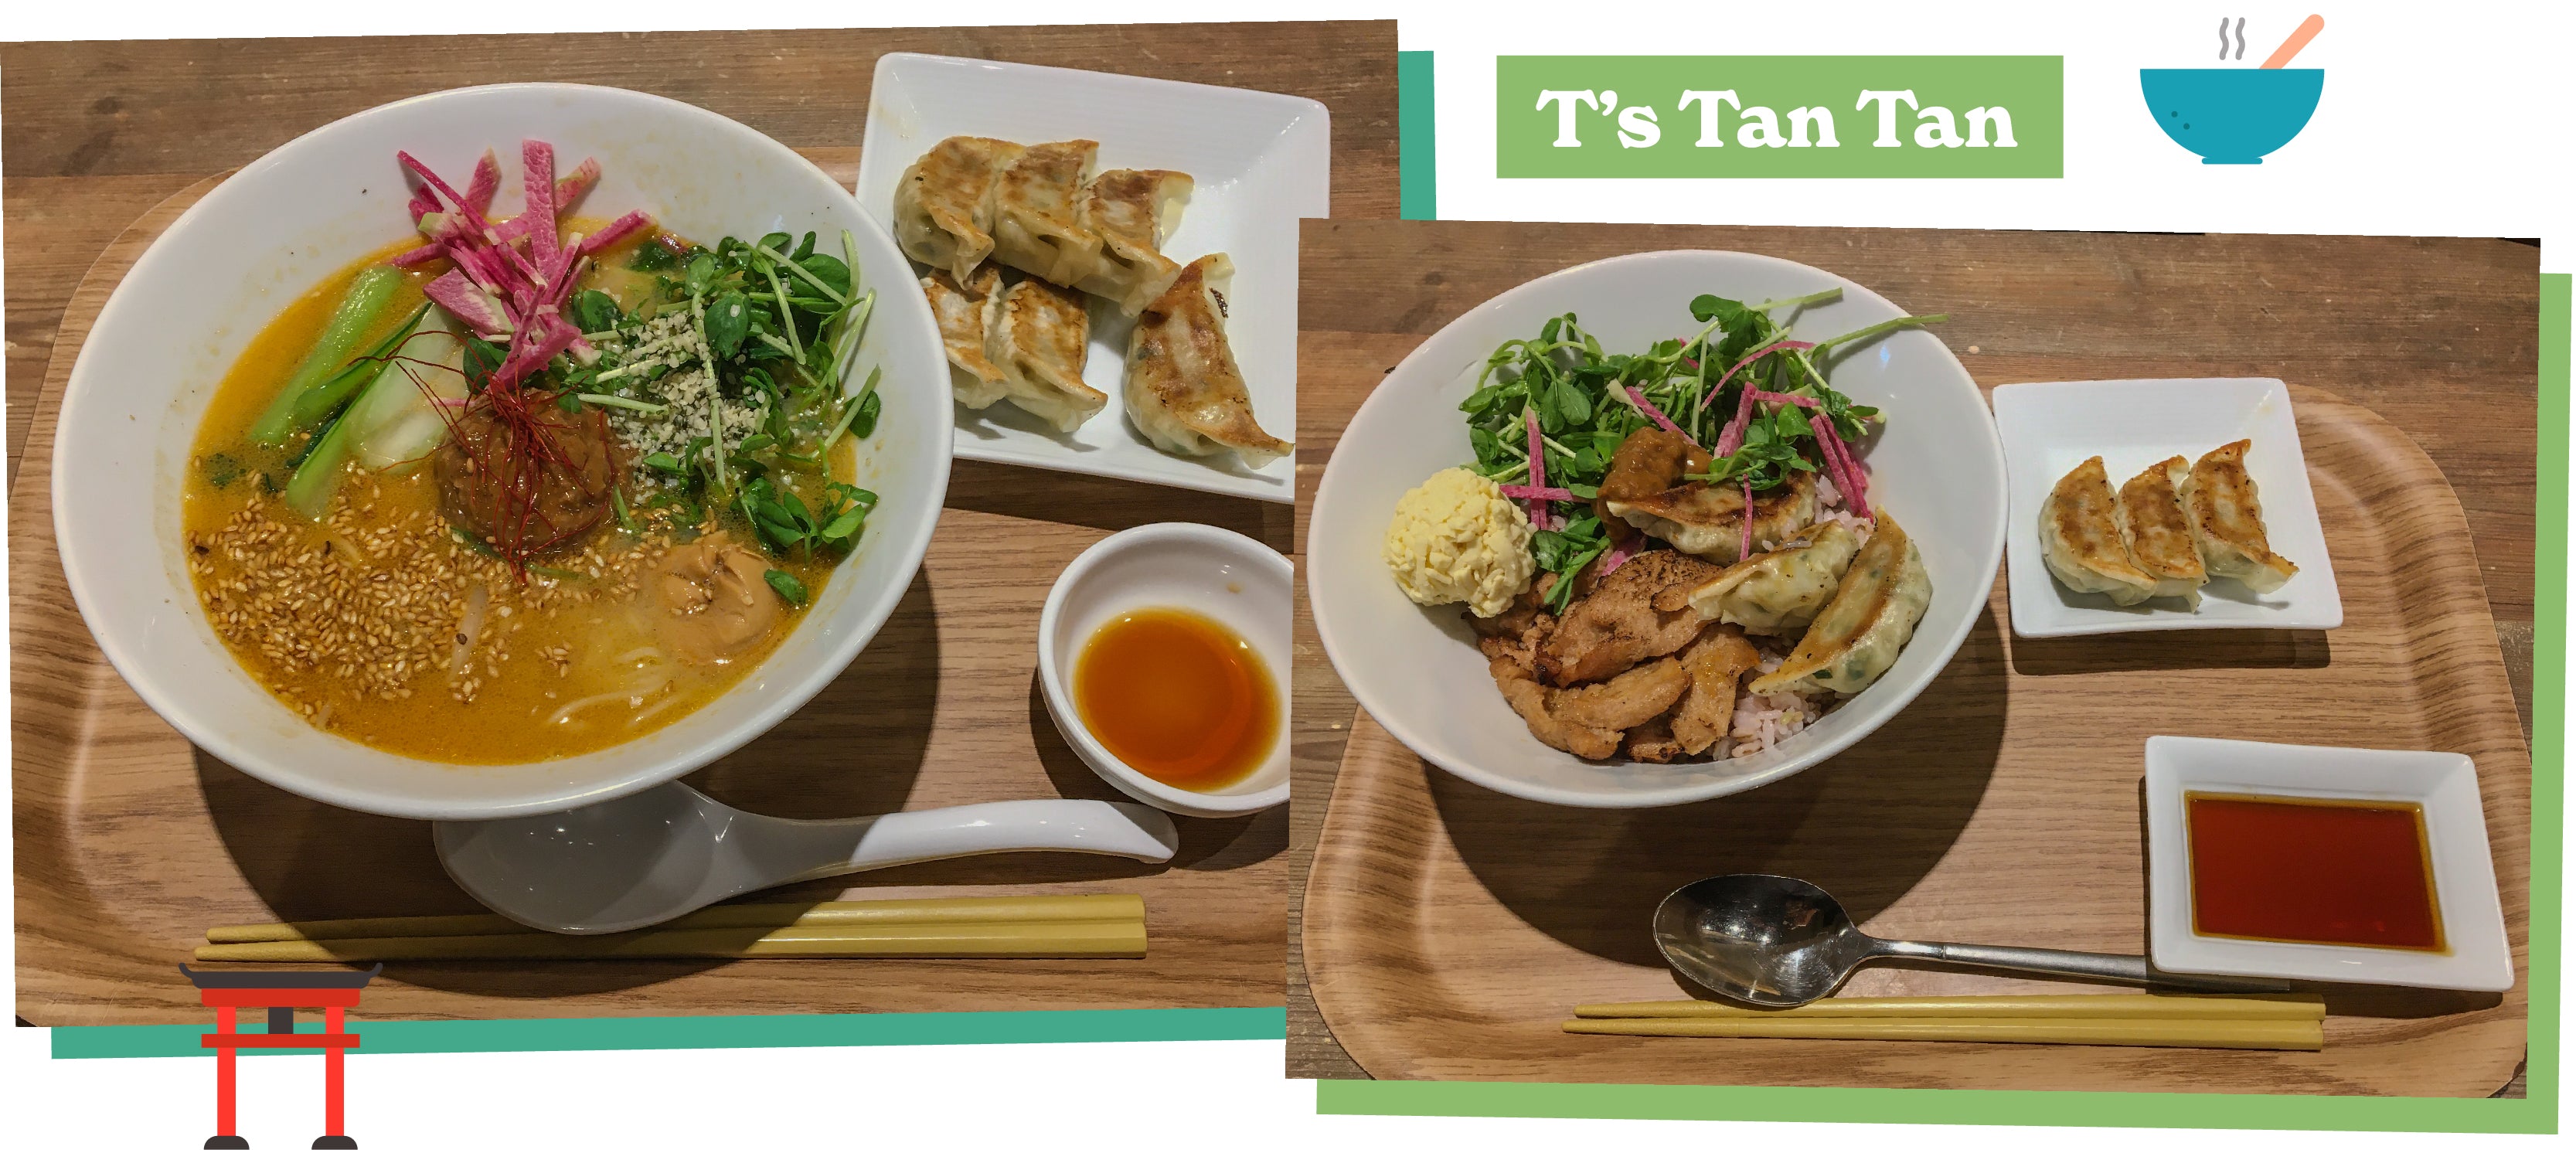 T’s Tan Tan vegan restaurant